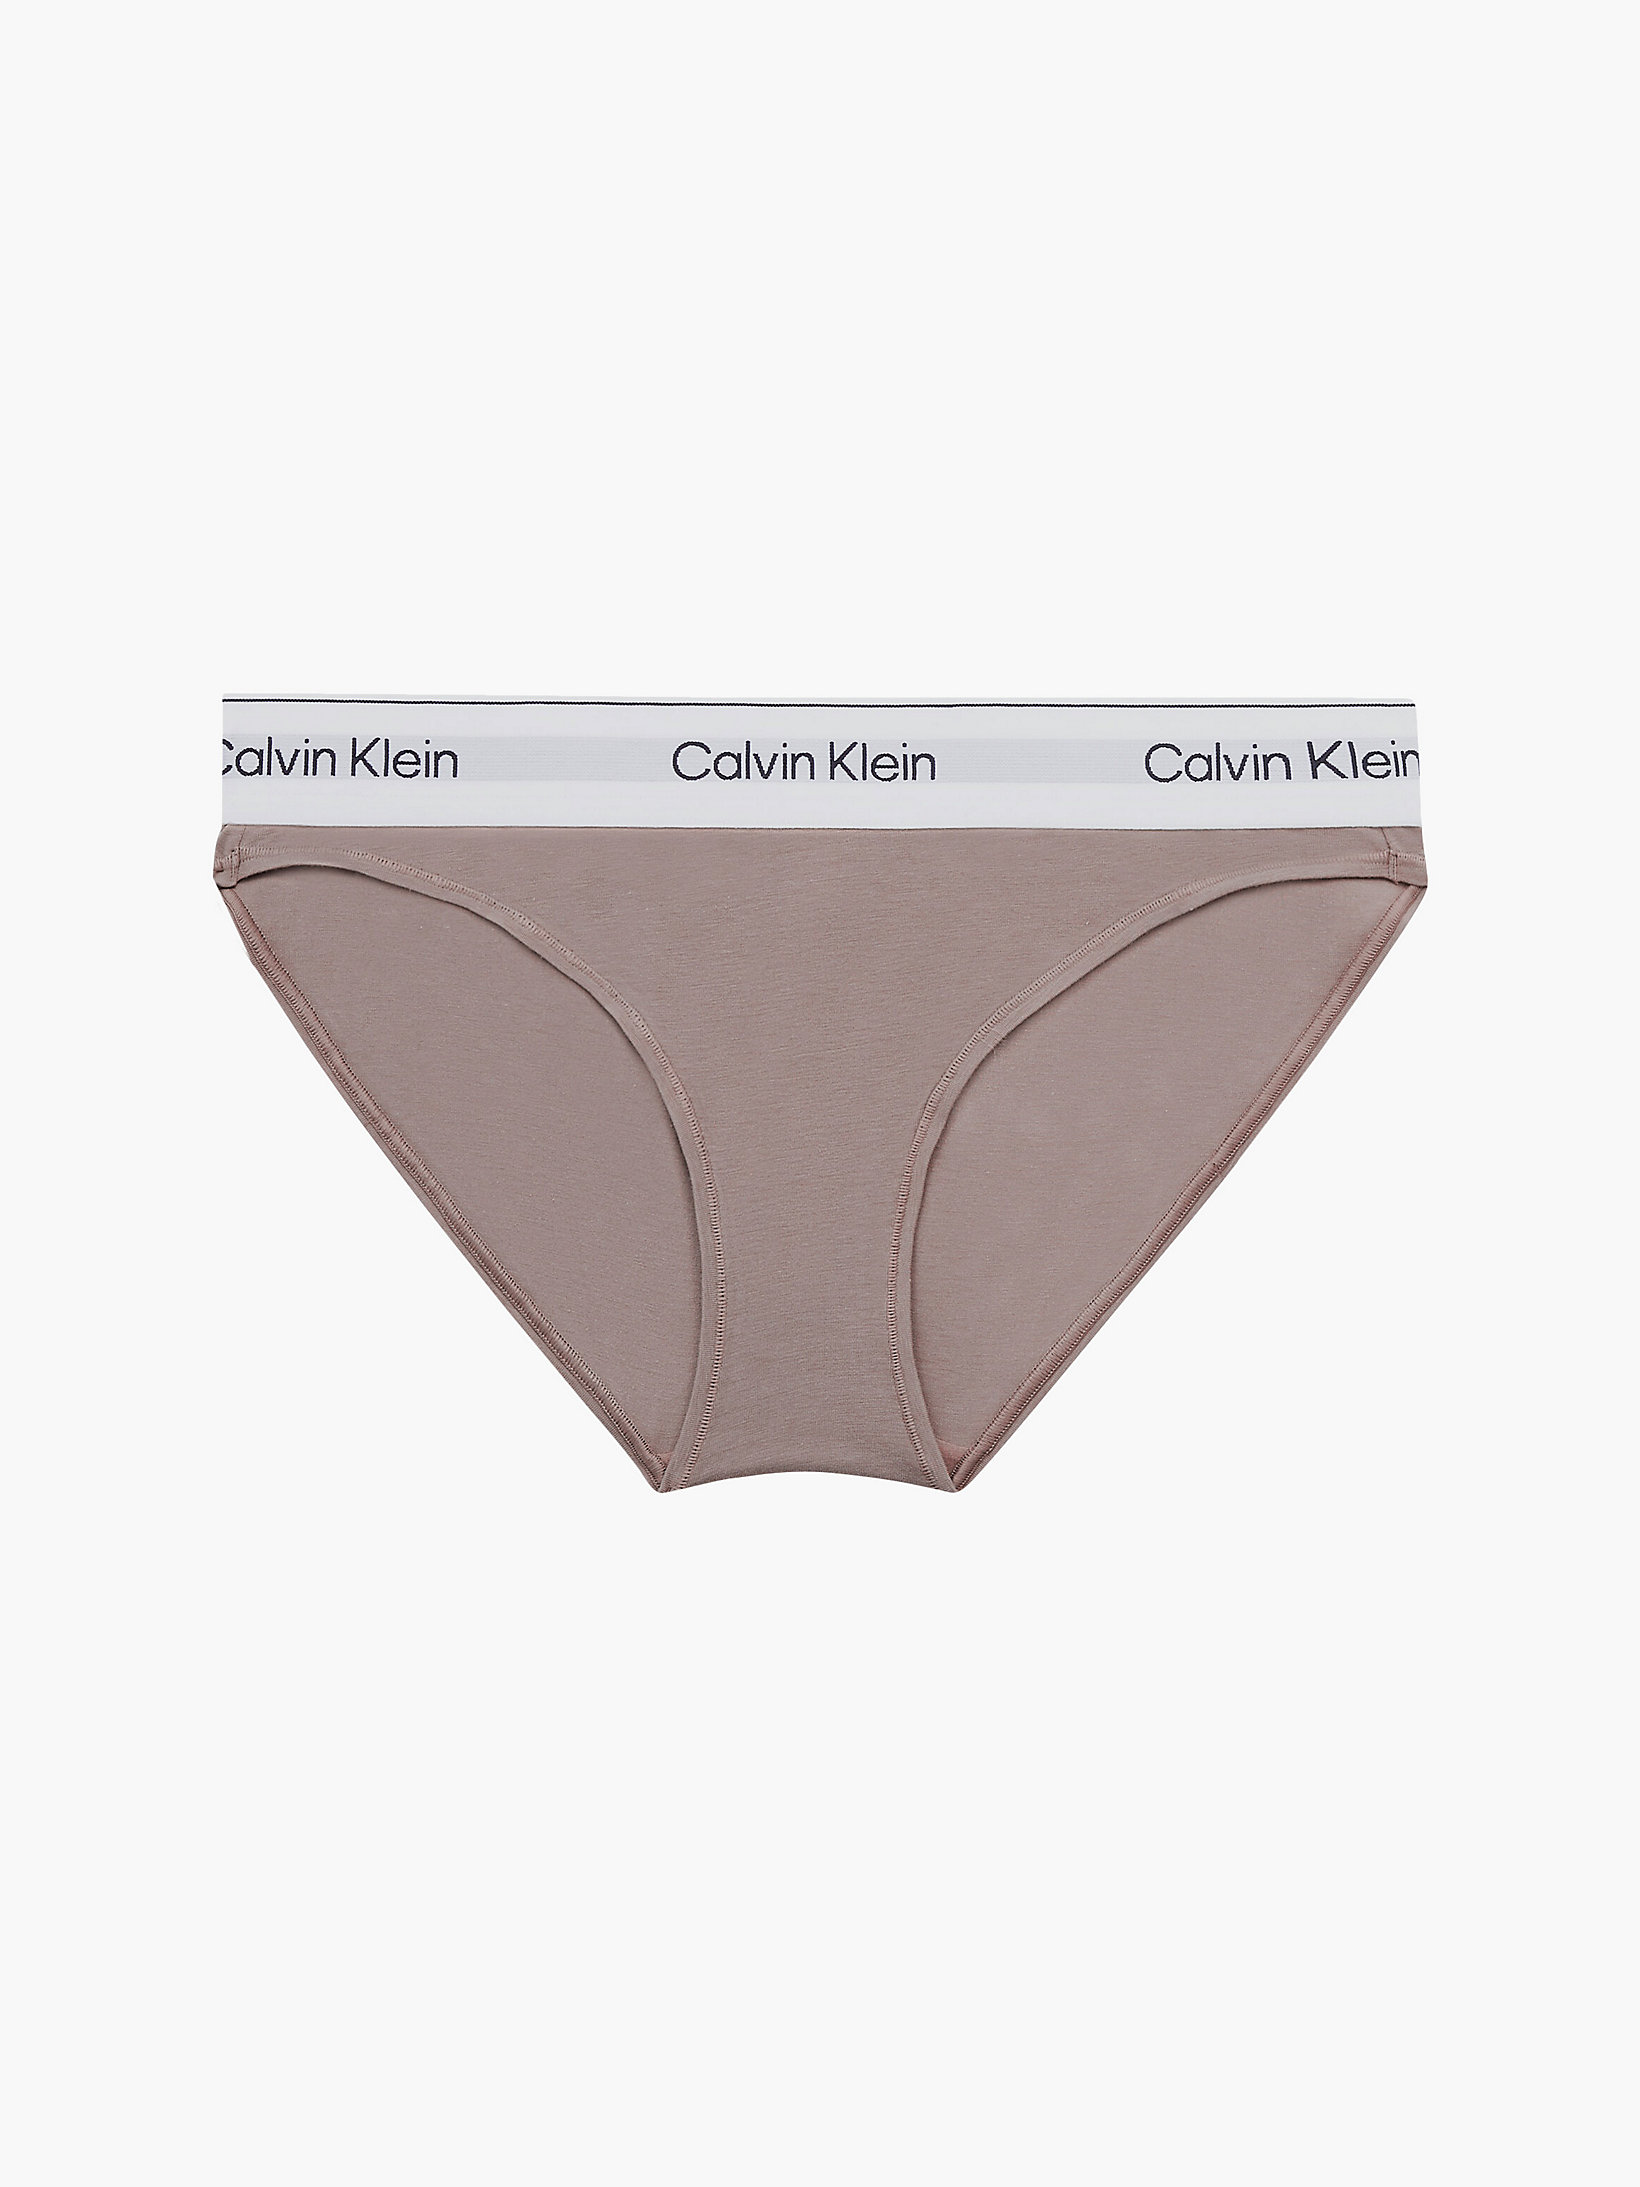 Culotte - Modern Cotton > Rich Taupe > undefined femmes > Calvin Klein